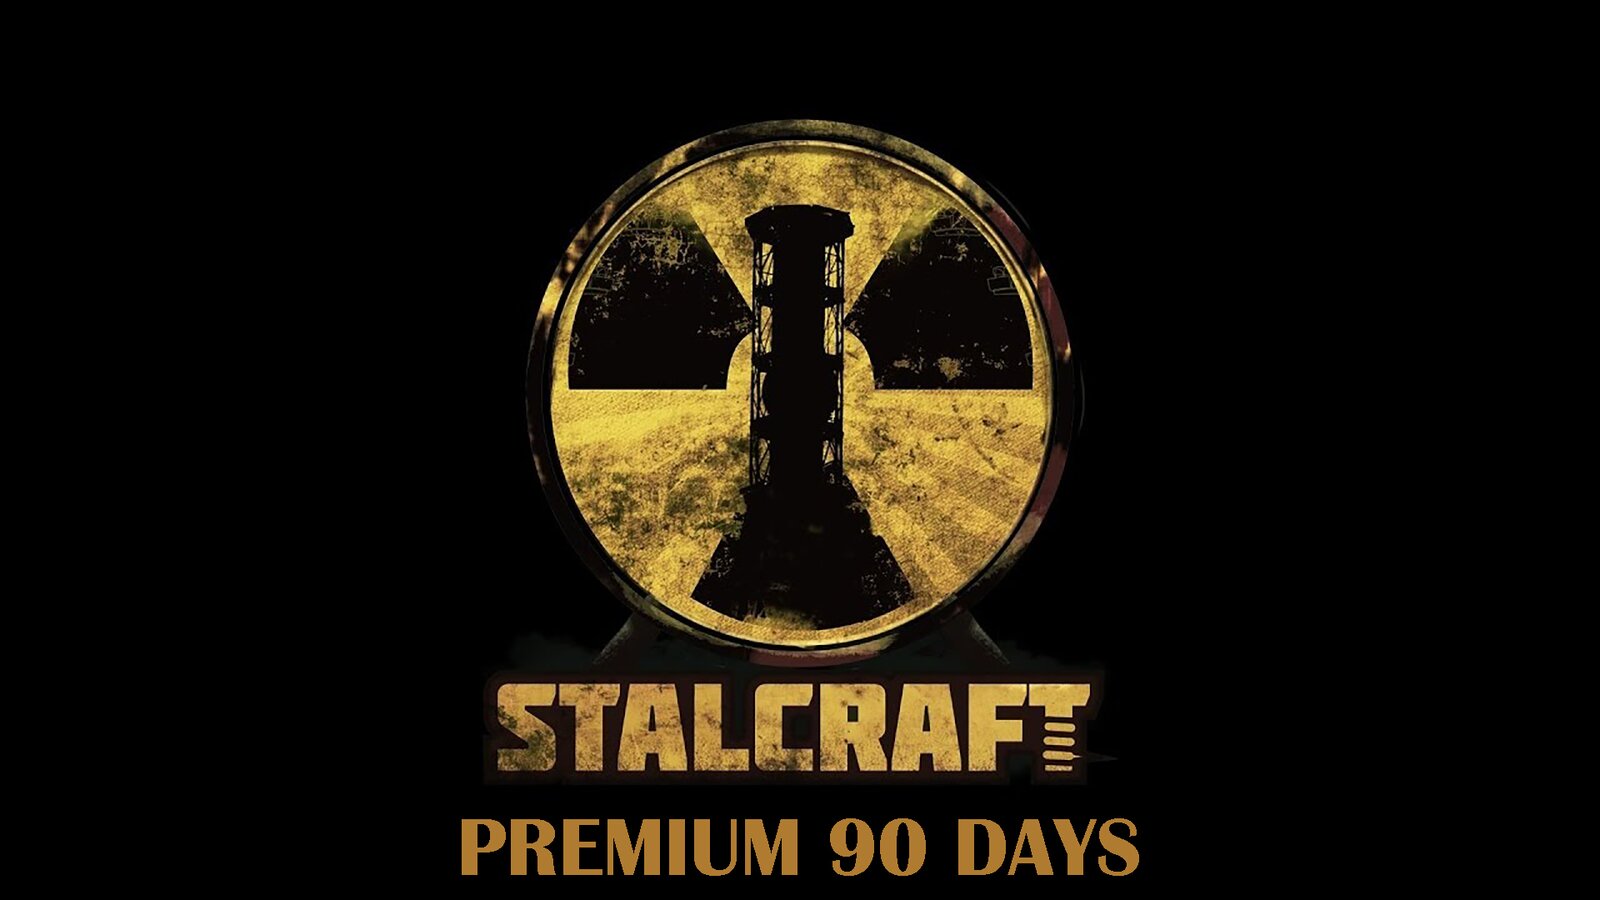 Stalcraft - Premium 90 days